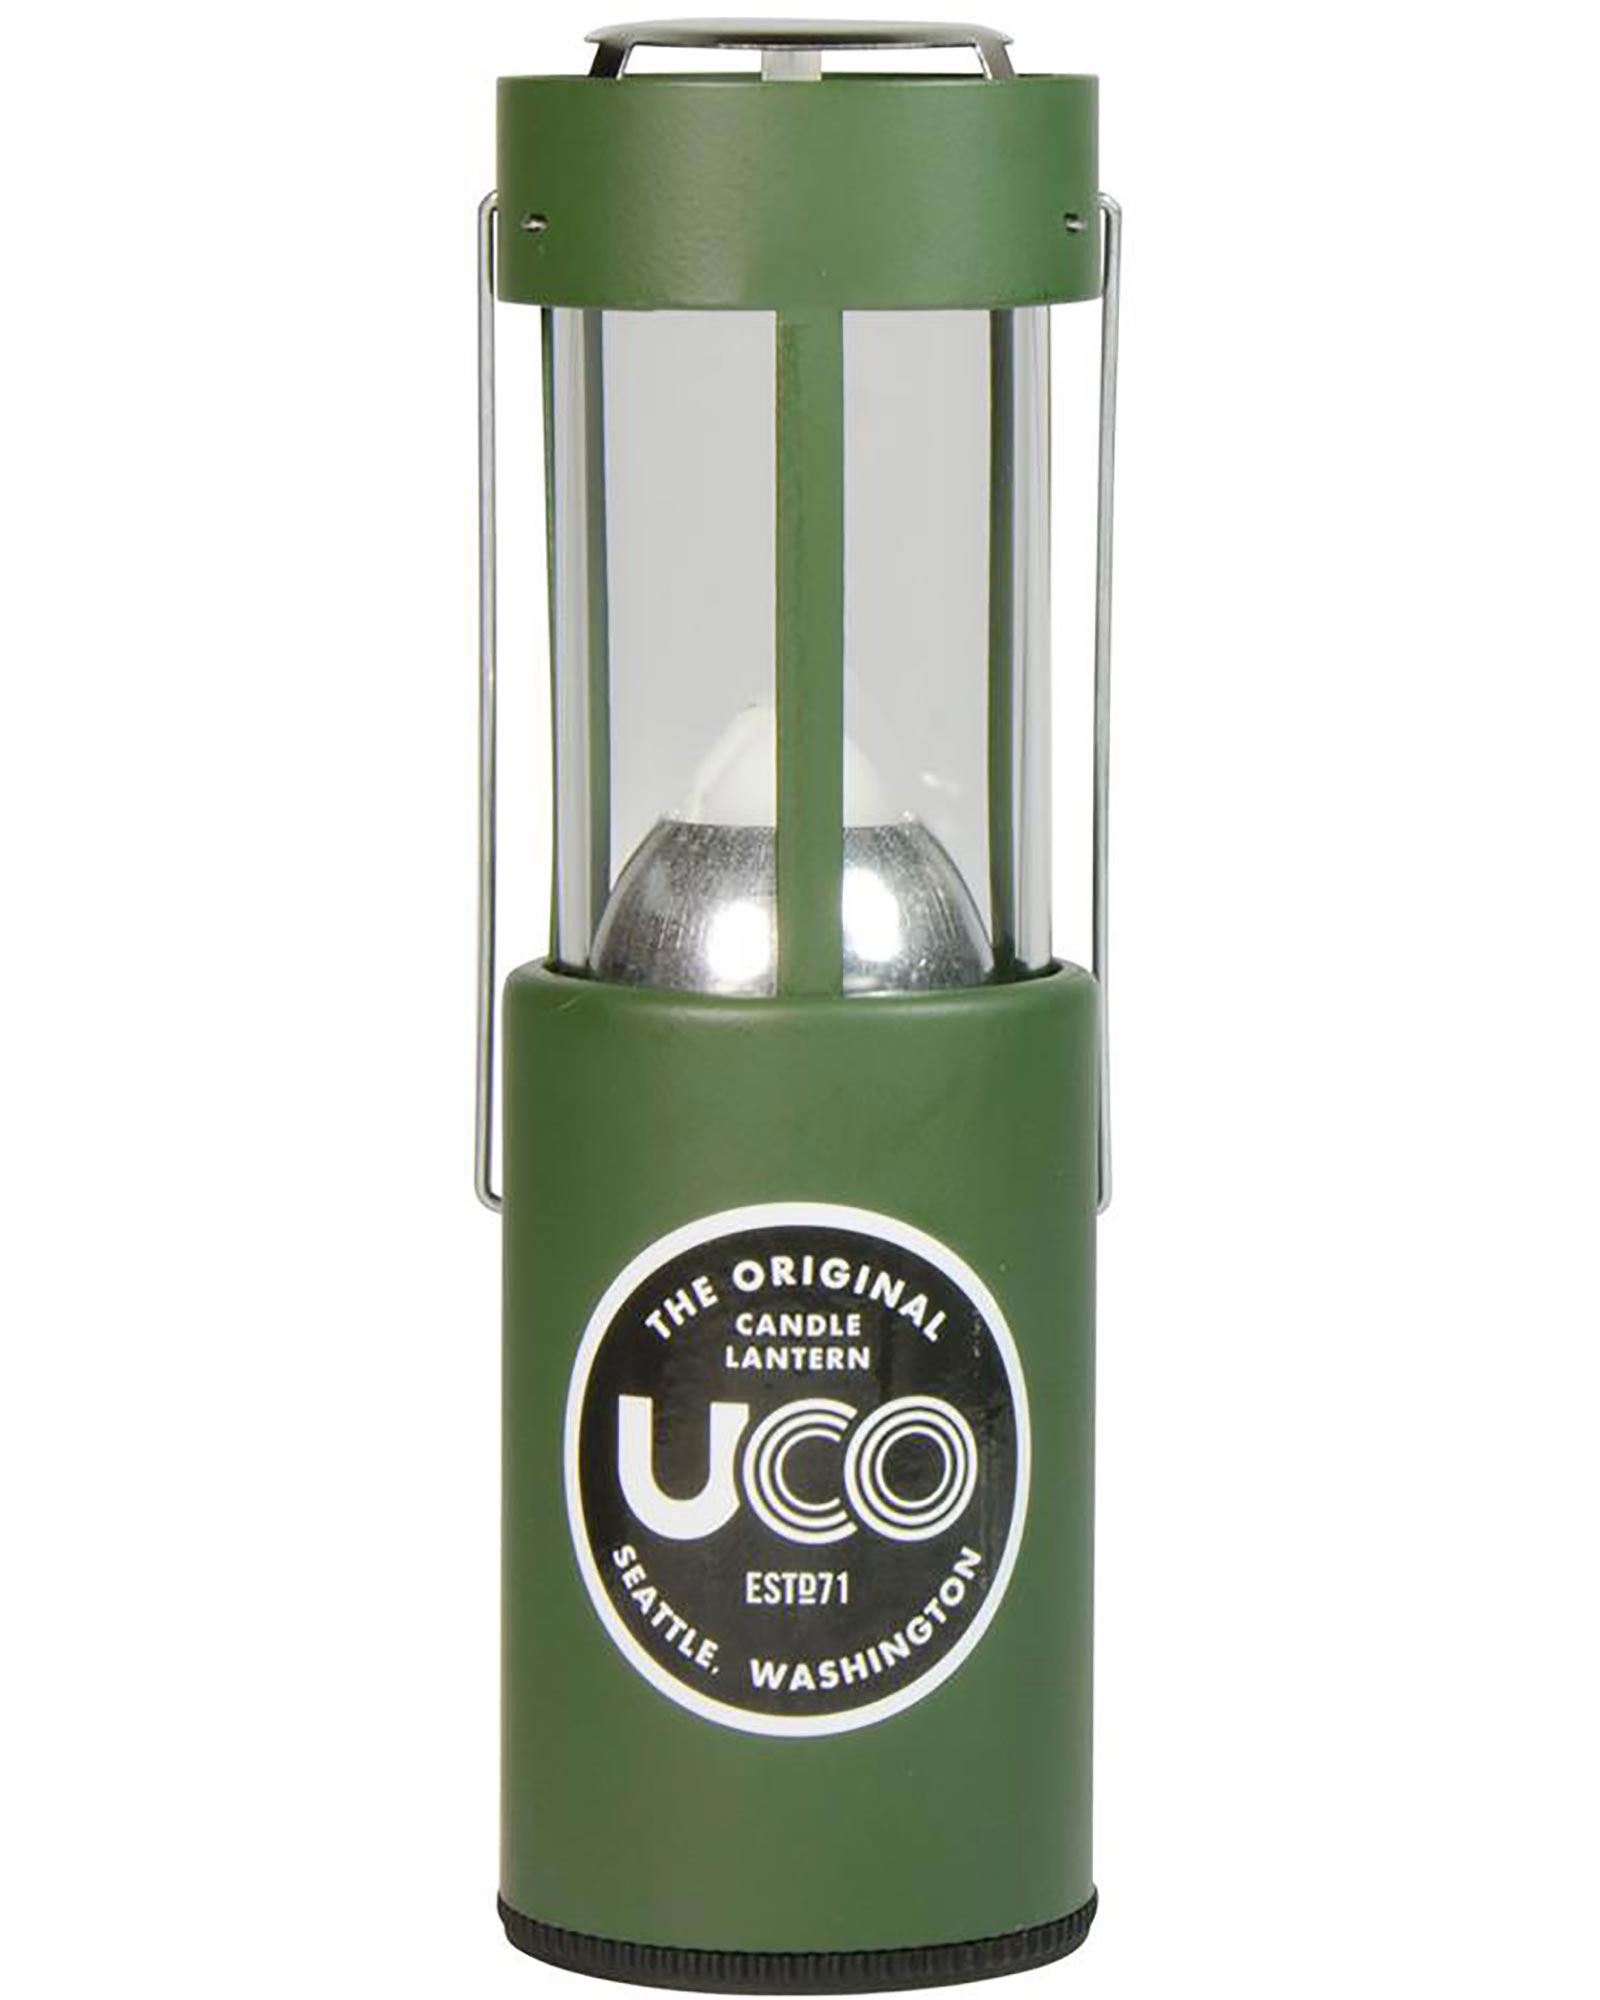 Product image of UCO Original Candle Lantern